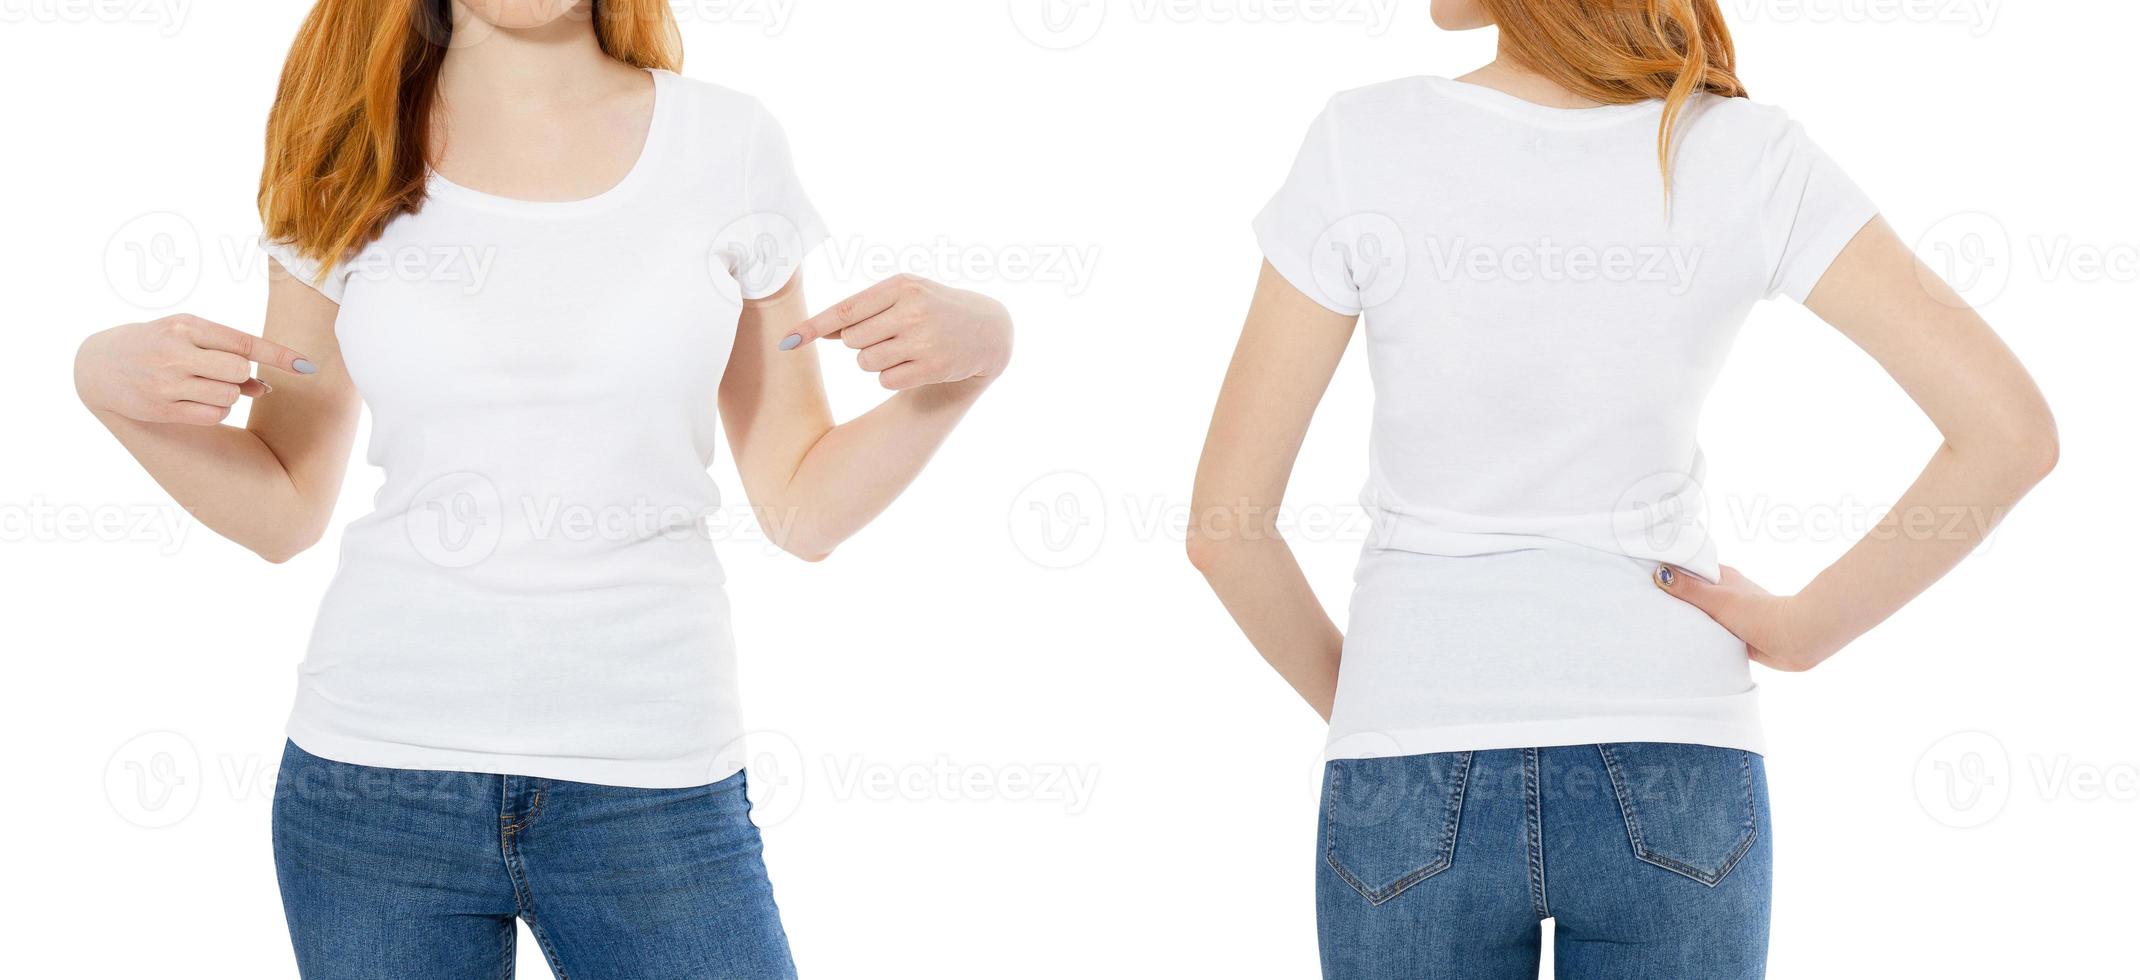 camiseta blanca en una plantilla de joven pelirroja aislada en fondo blanco atrás y adelante con camino de recorte. camiseta blanca de mujer, maqueta de camiseta de dama foto